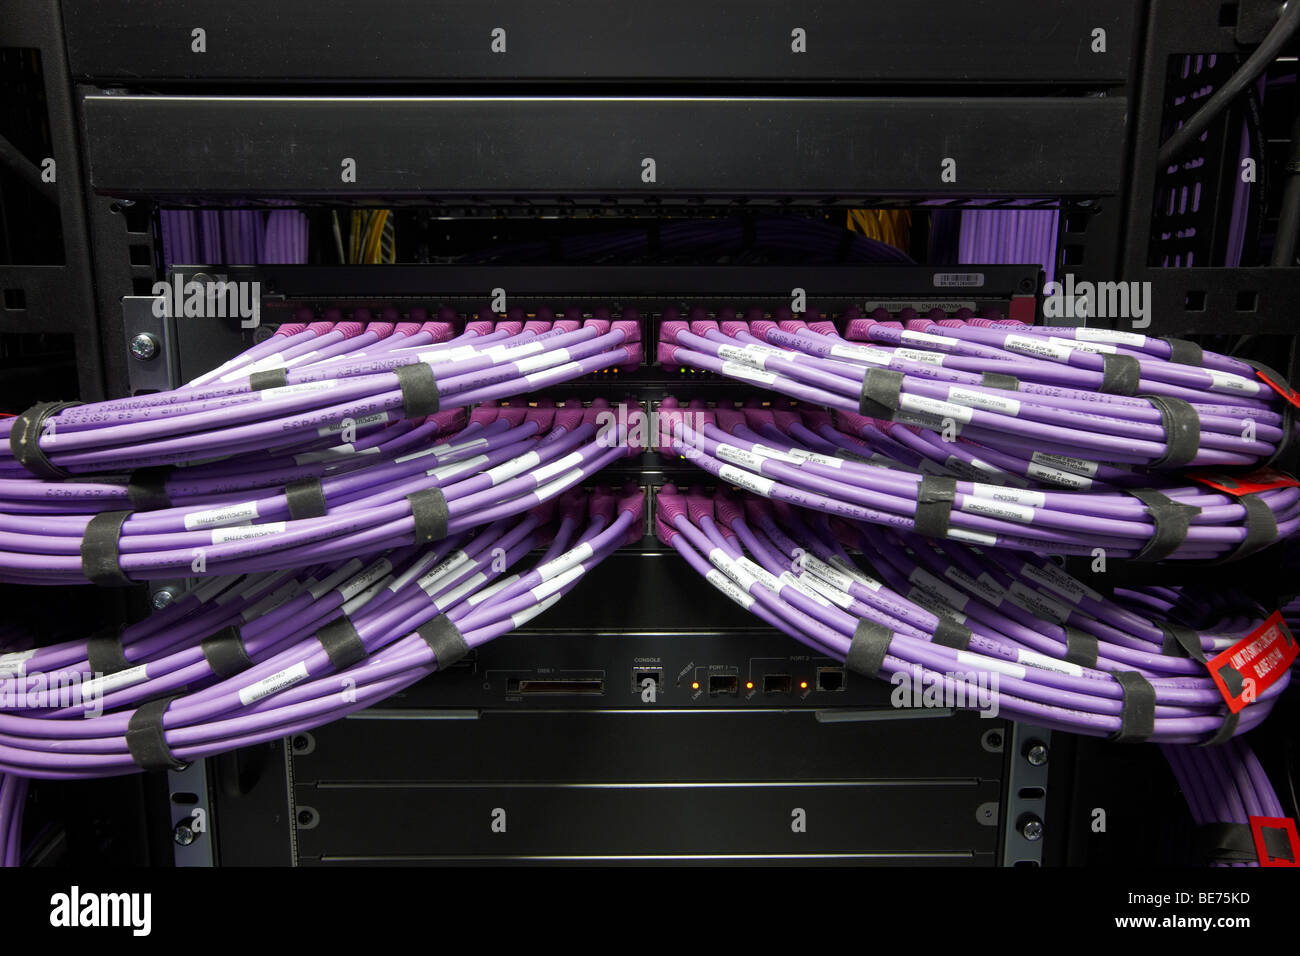 Informatica e comunicazioni camera viola i fasci di cavi ethernet hub server commutatore Foto Stock